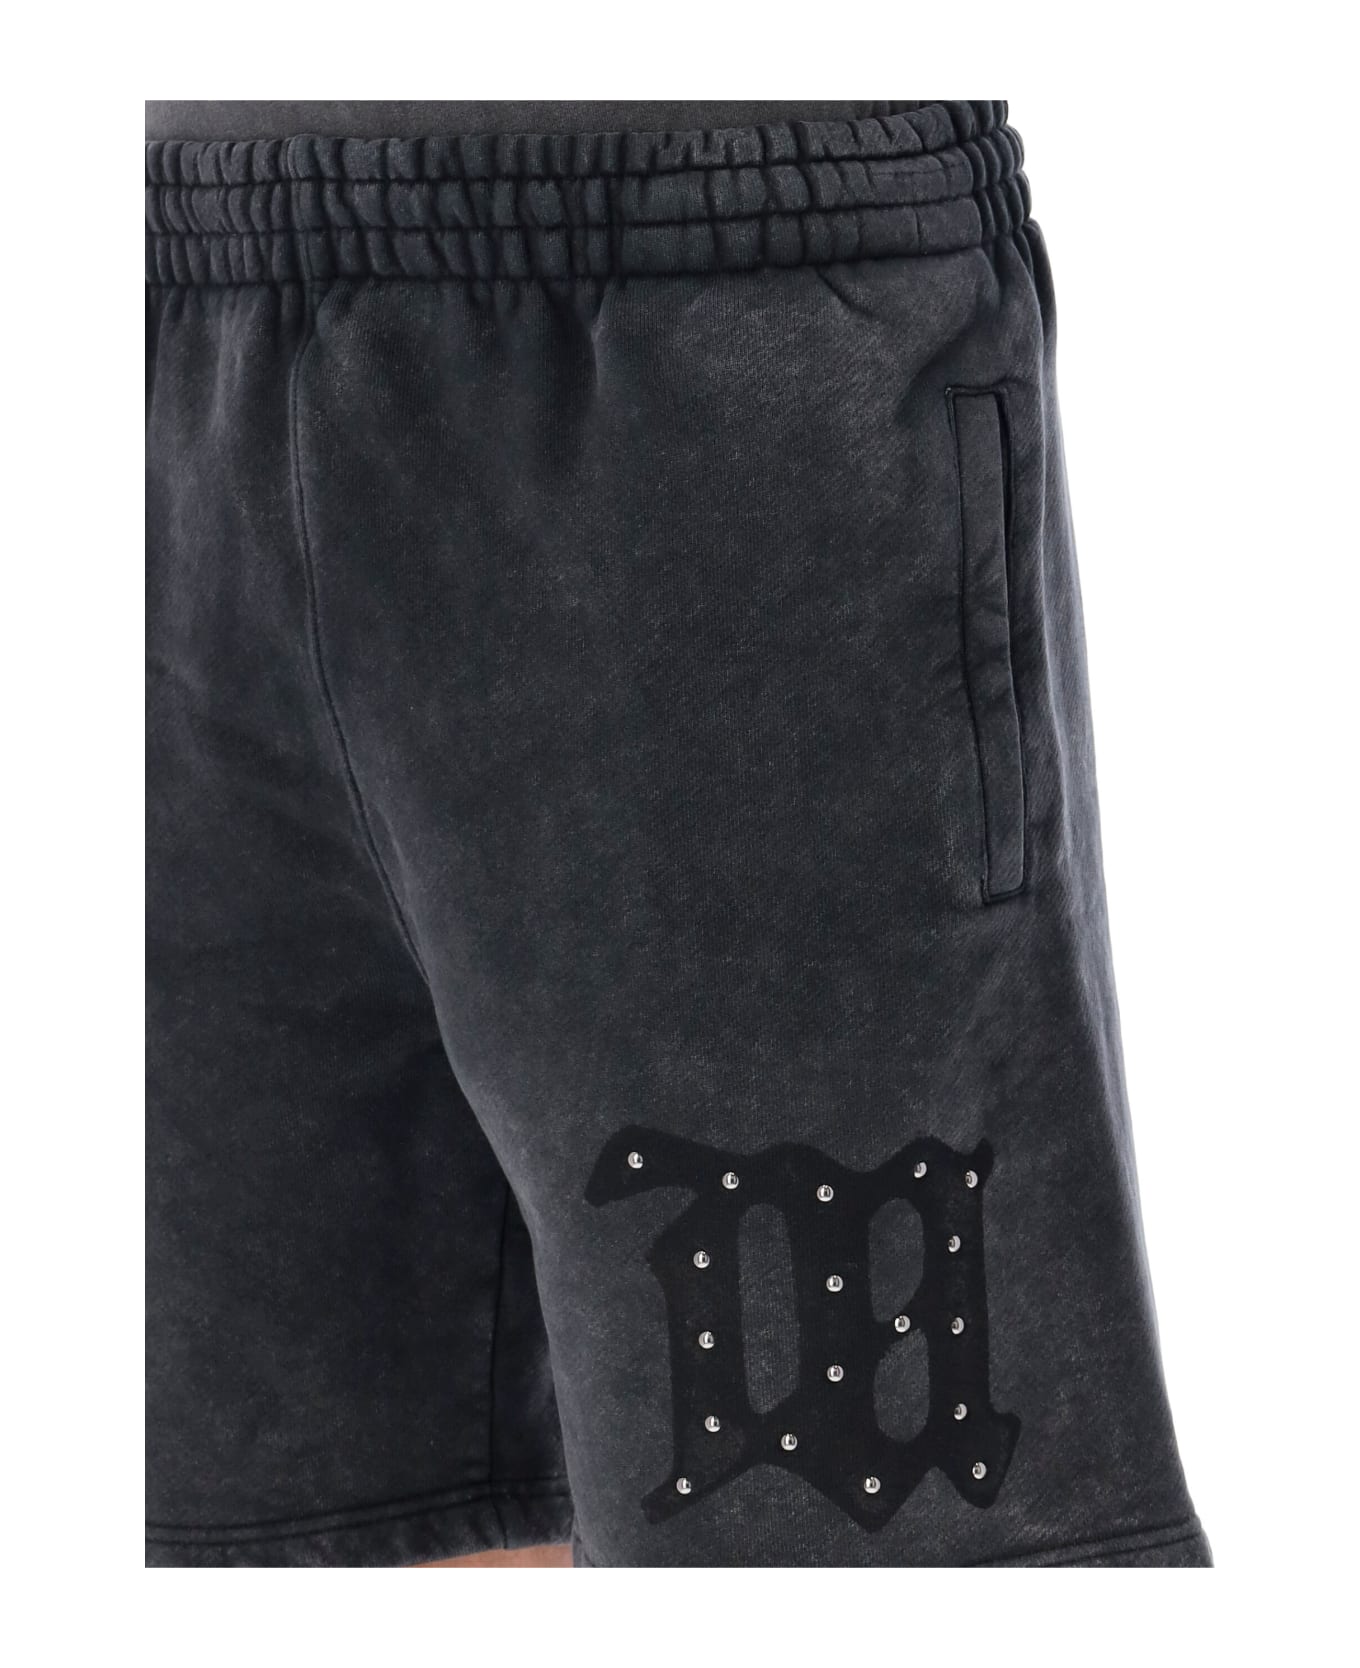 MISBHV Signature Shorts - WASHED BLACK ショートパンツ